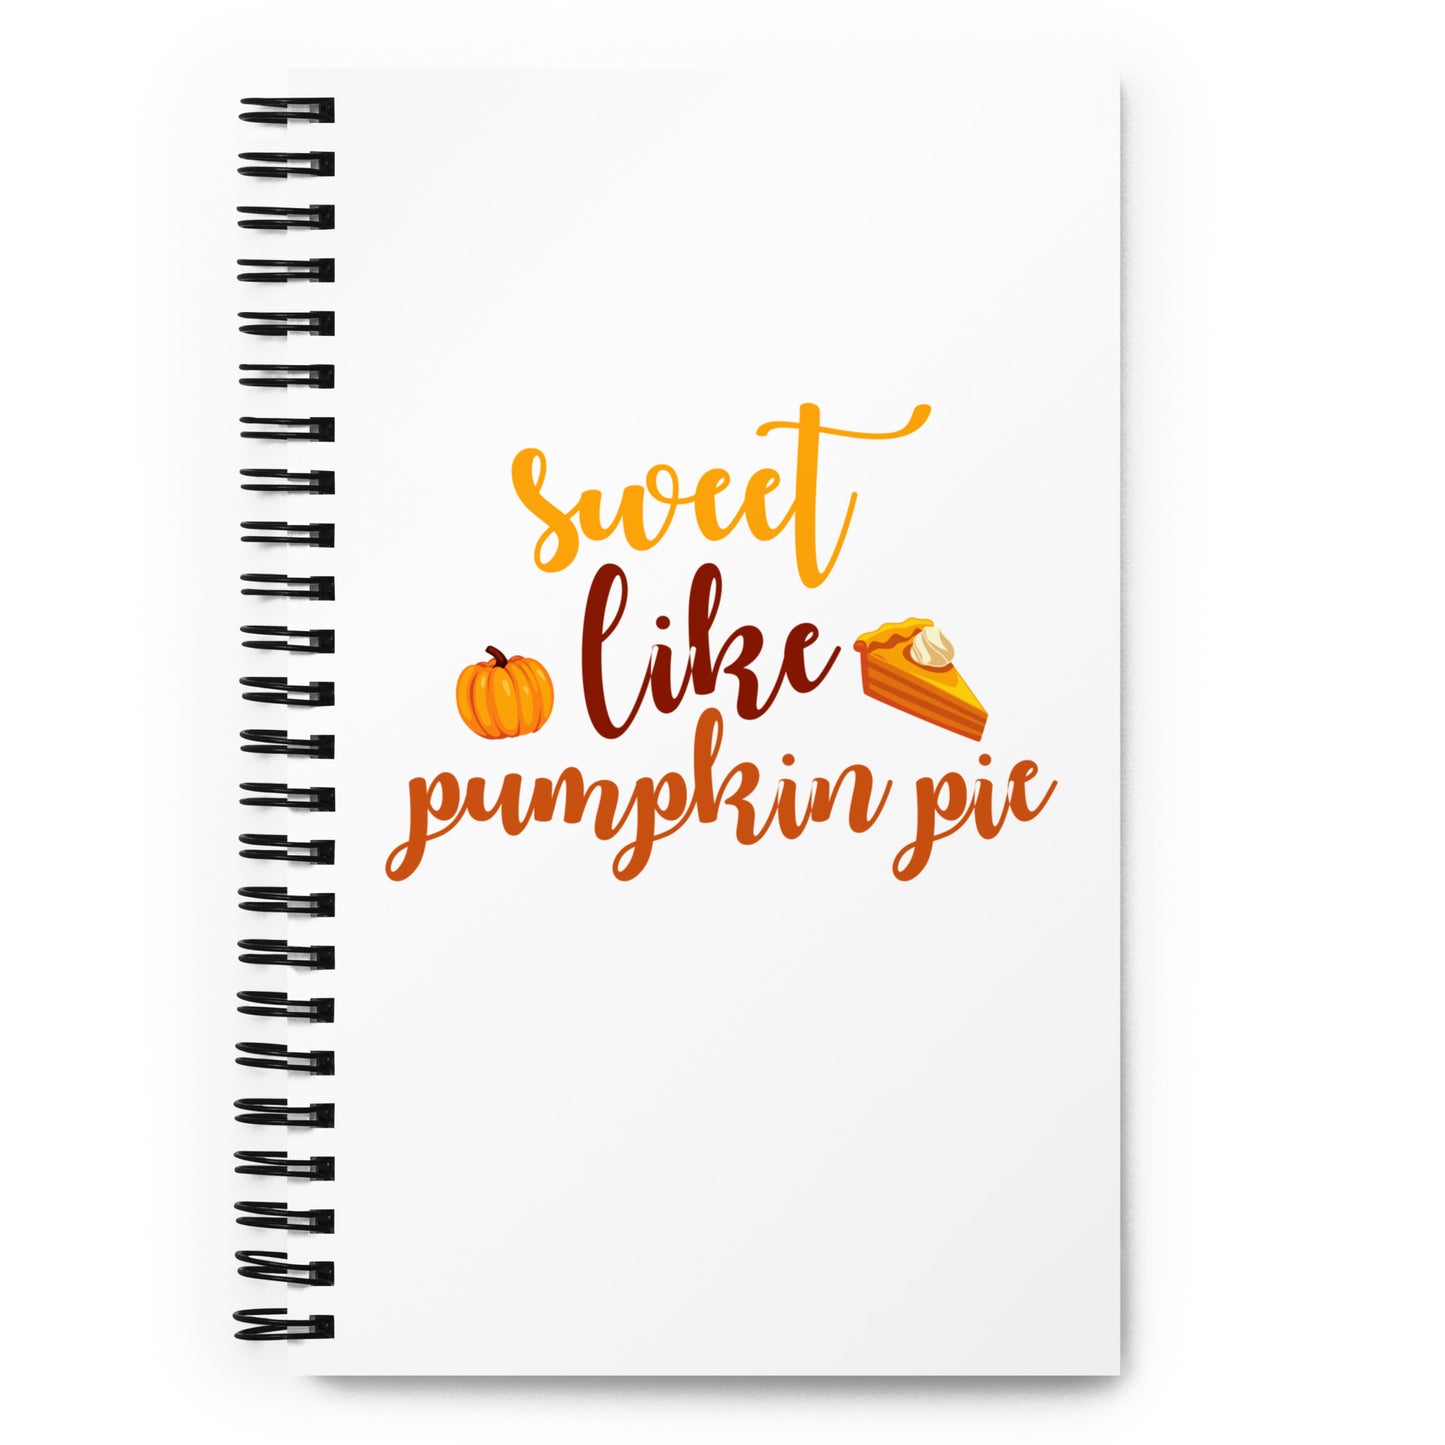 Sweet Like Pumpkin Pie Spiral notebook